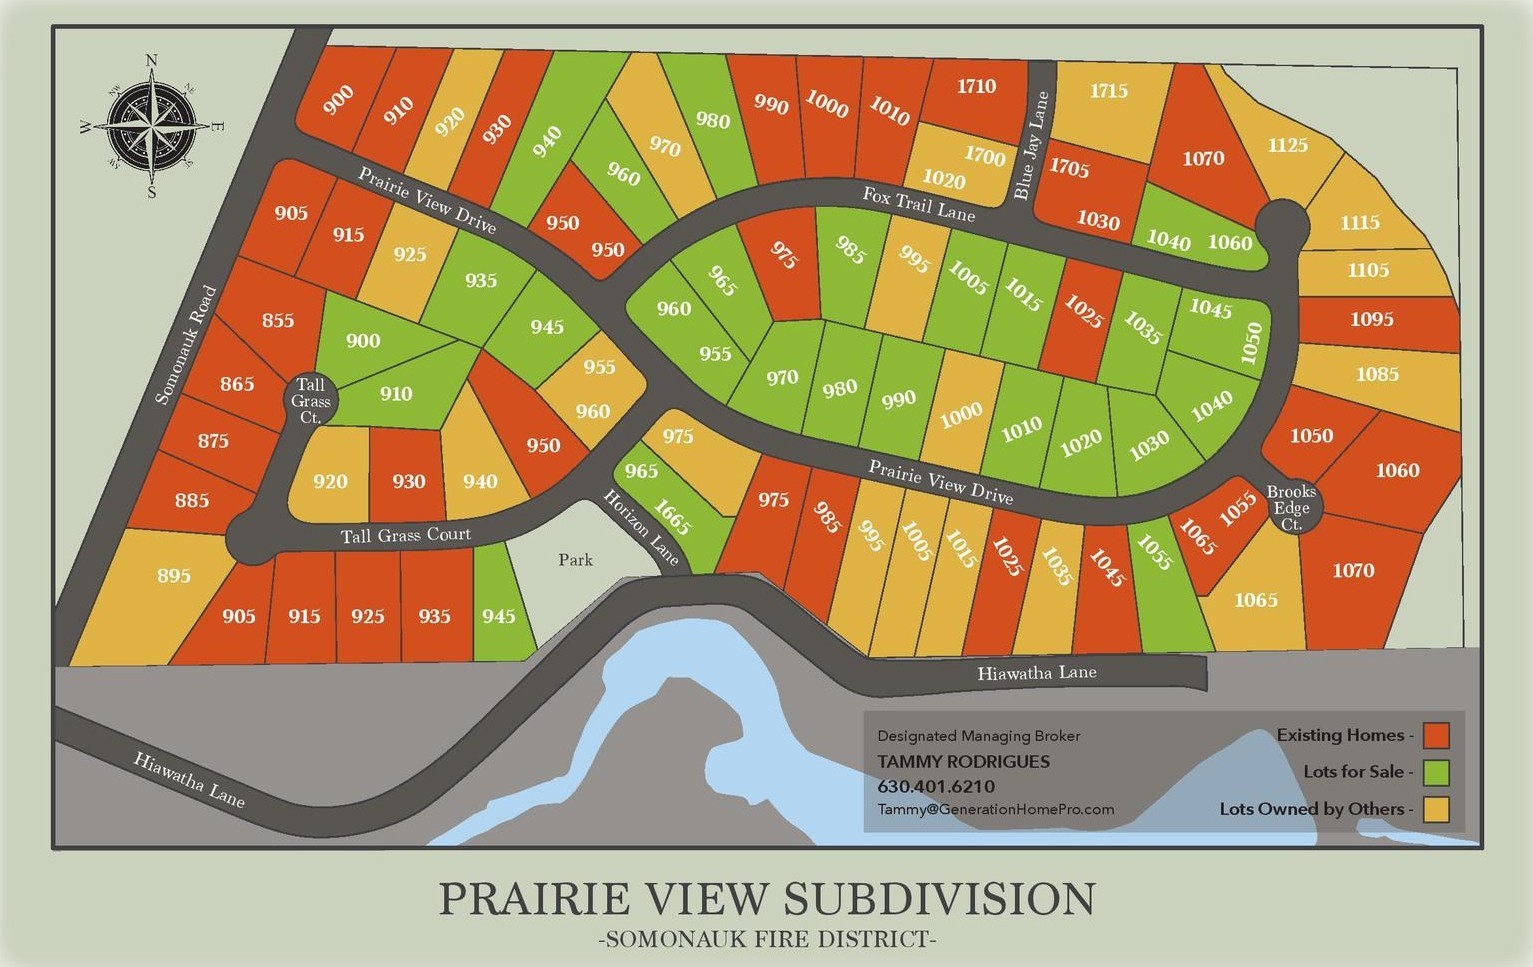 9. 970 Prairie View Drive